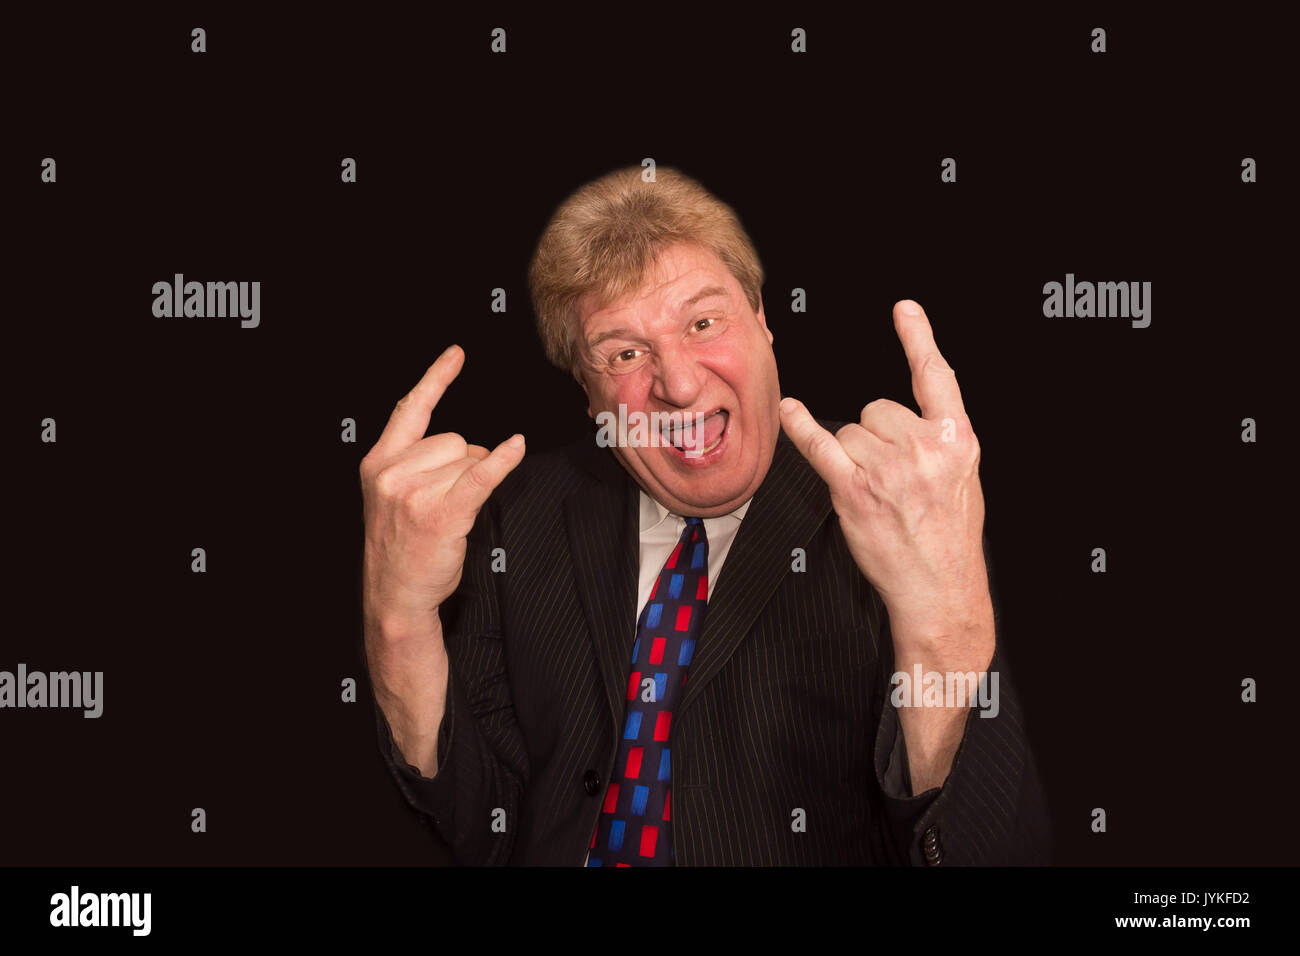 Homme âgé faisant un geste cornes représentant des groupes rock music Banque D'Images